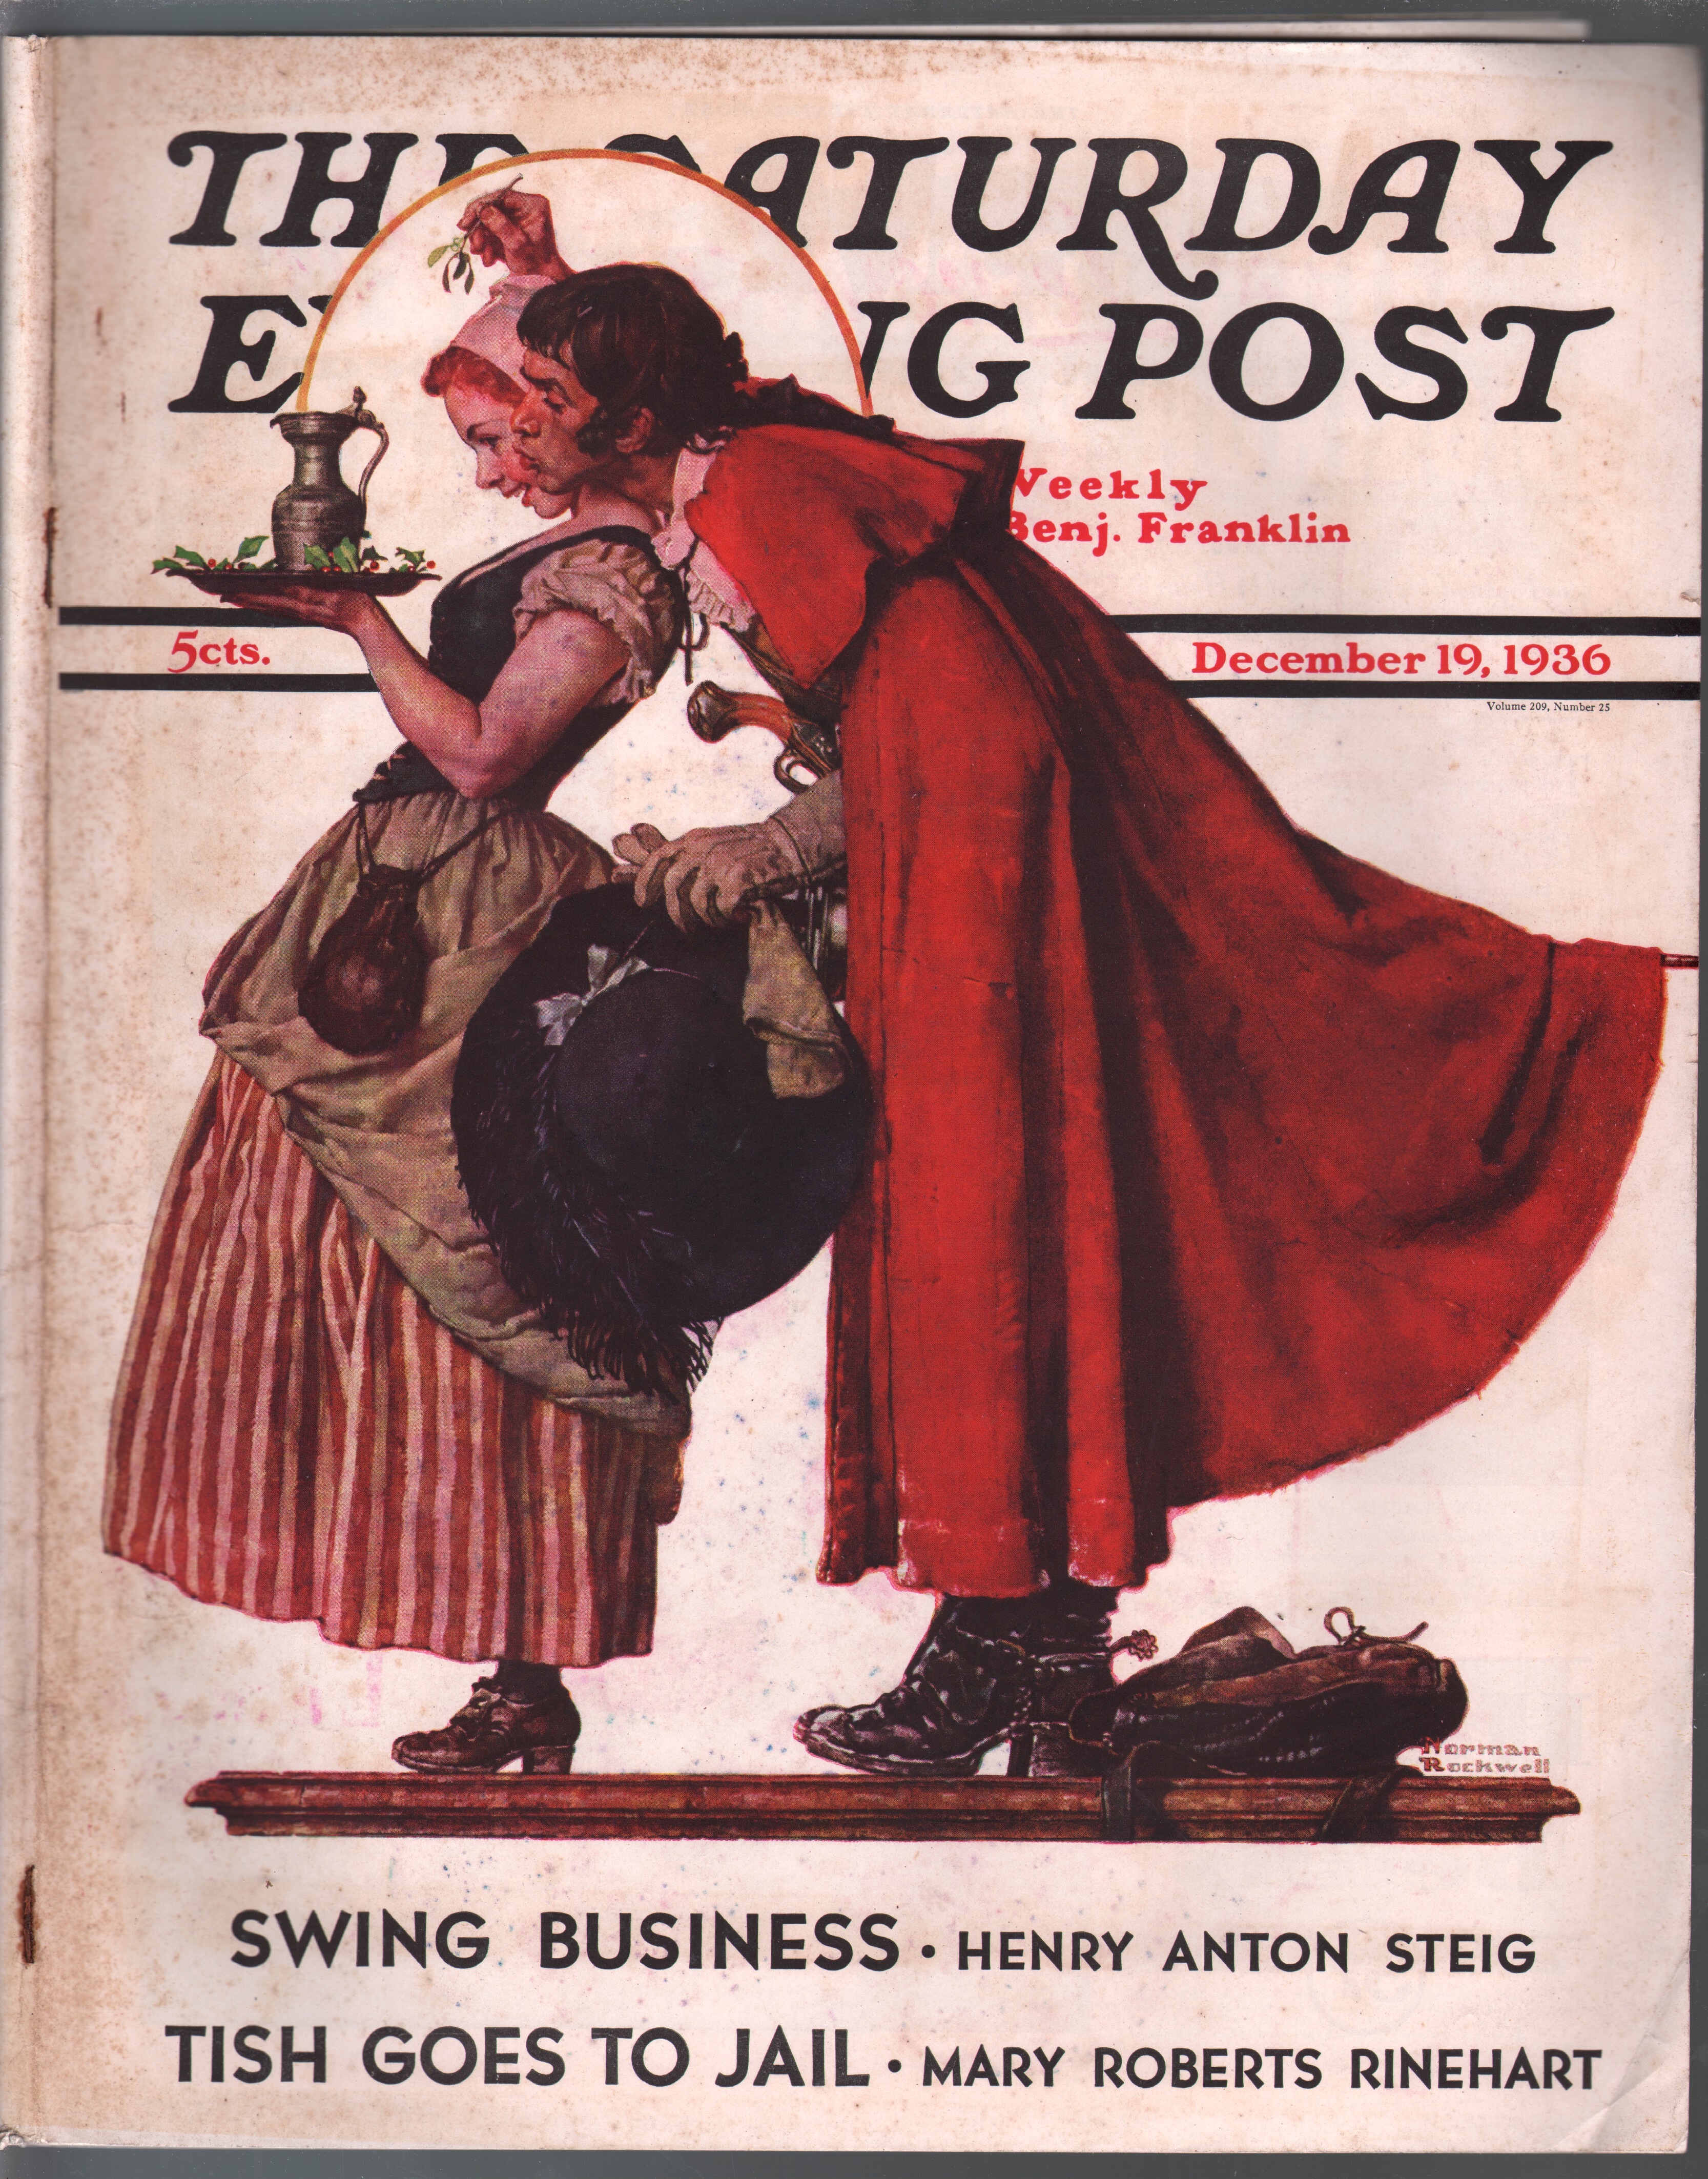 DEC 12 1936 SATURDAY EVENING POST magazine AUTUMN 